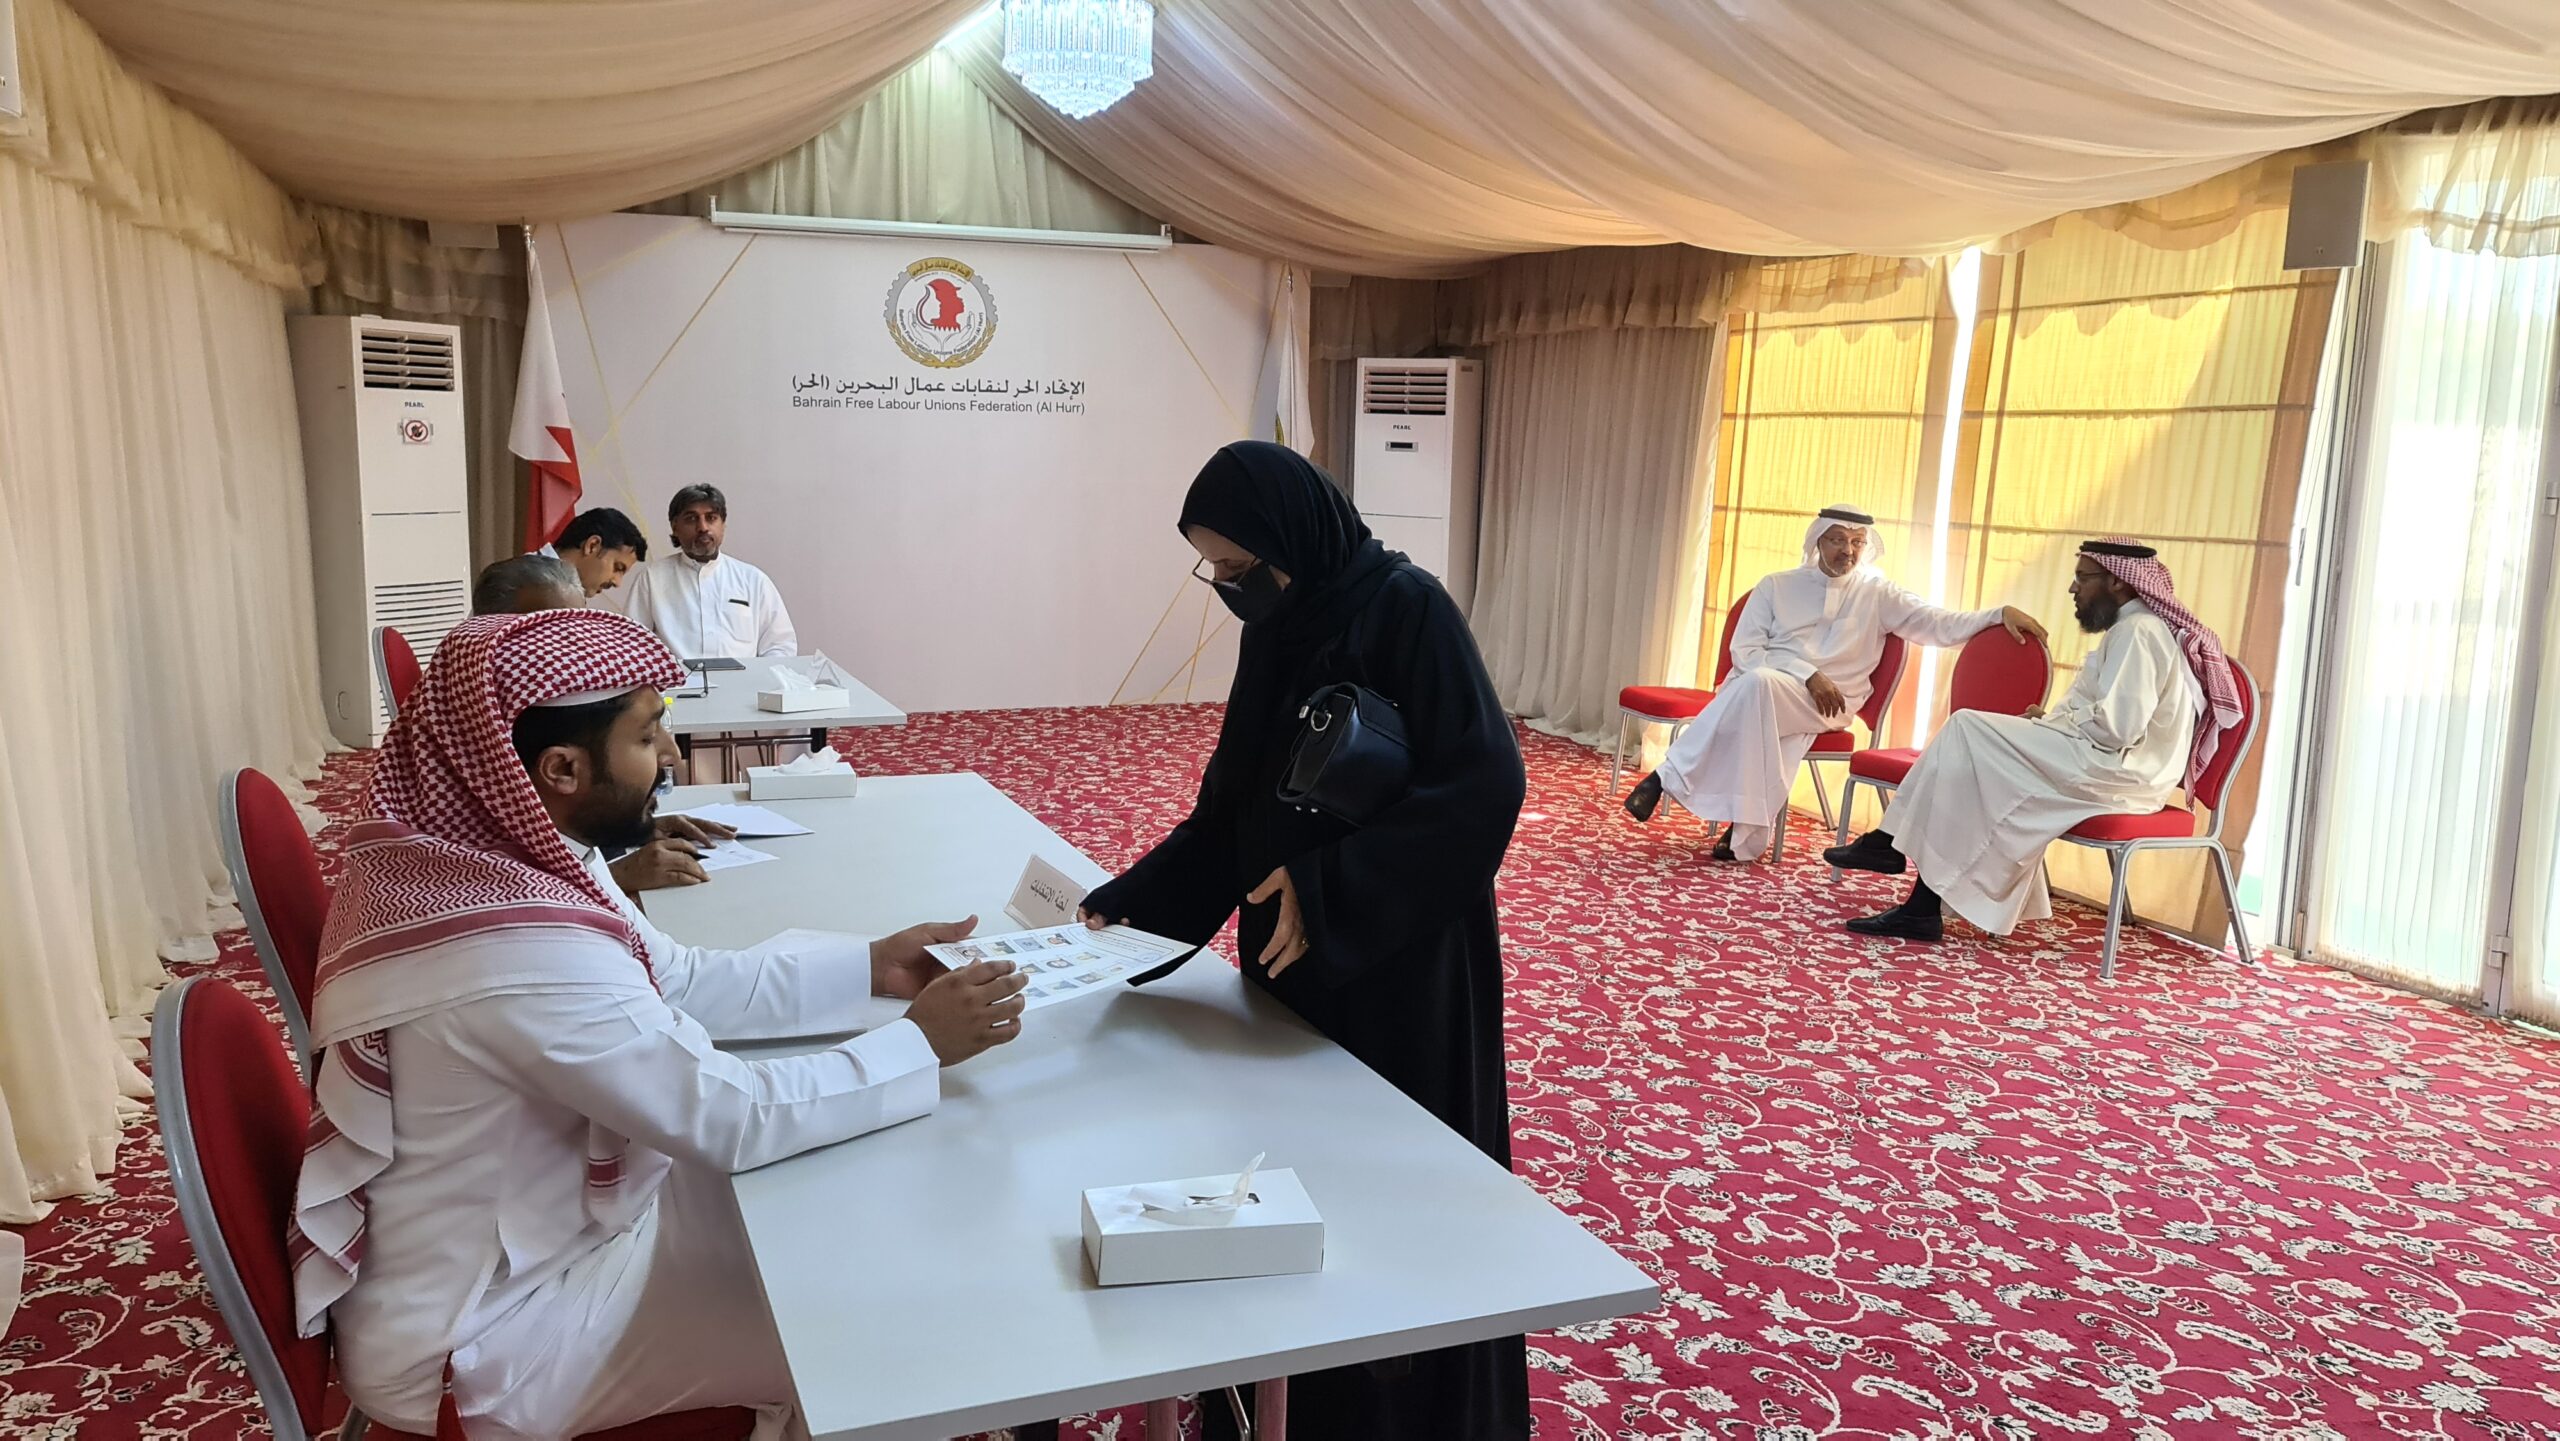 بدعم ومساندة الاتحاد الحر “نقابة التربويين البحرينية تنتخب مجلس إدارتها لدورة إنتخابية جديدة”    